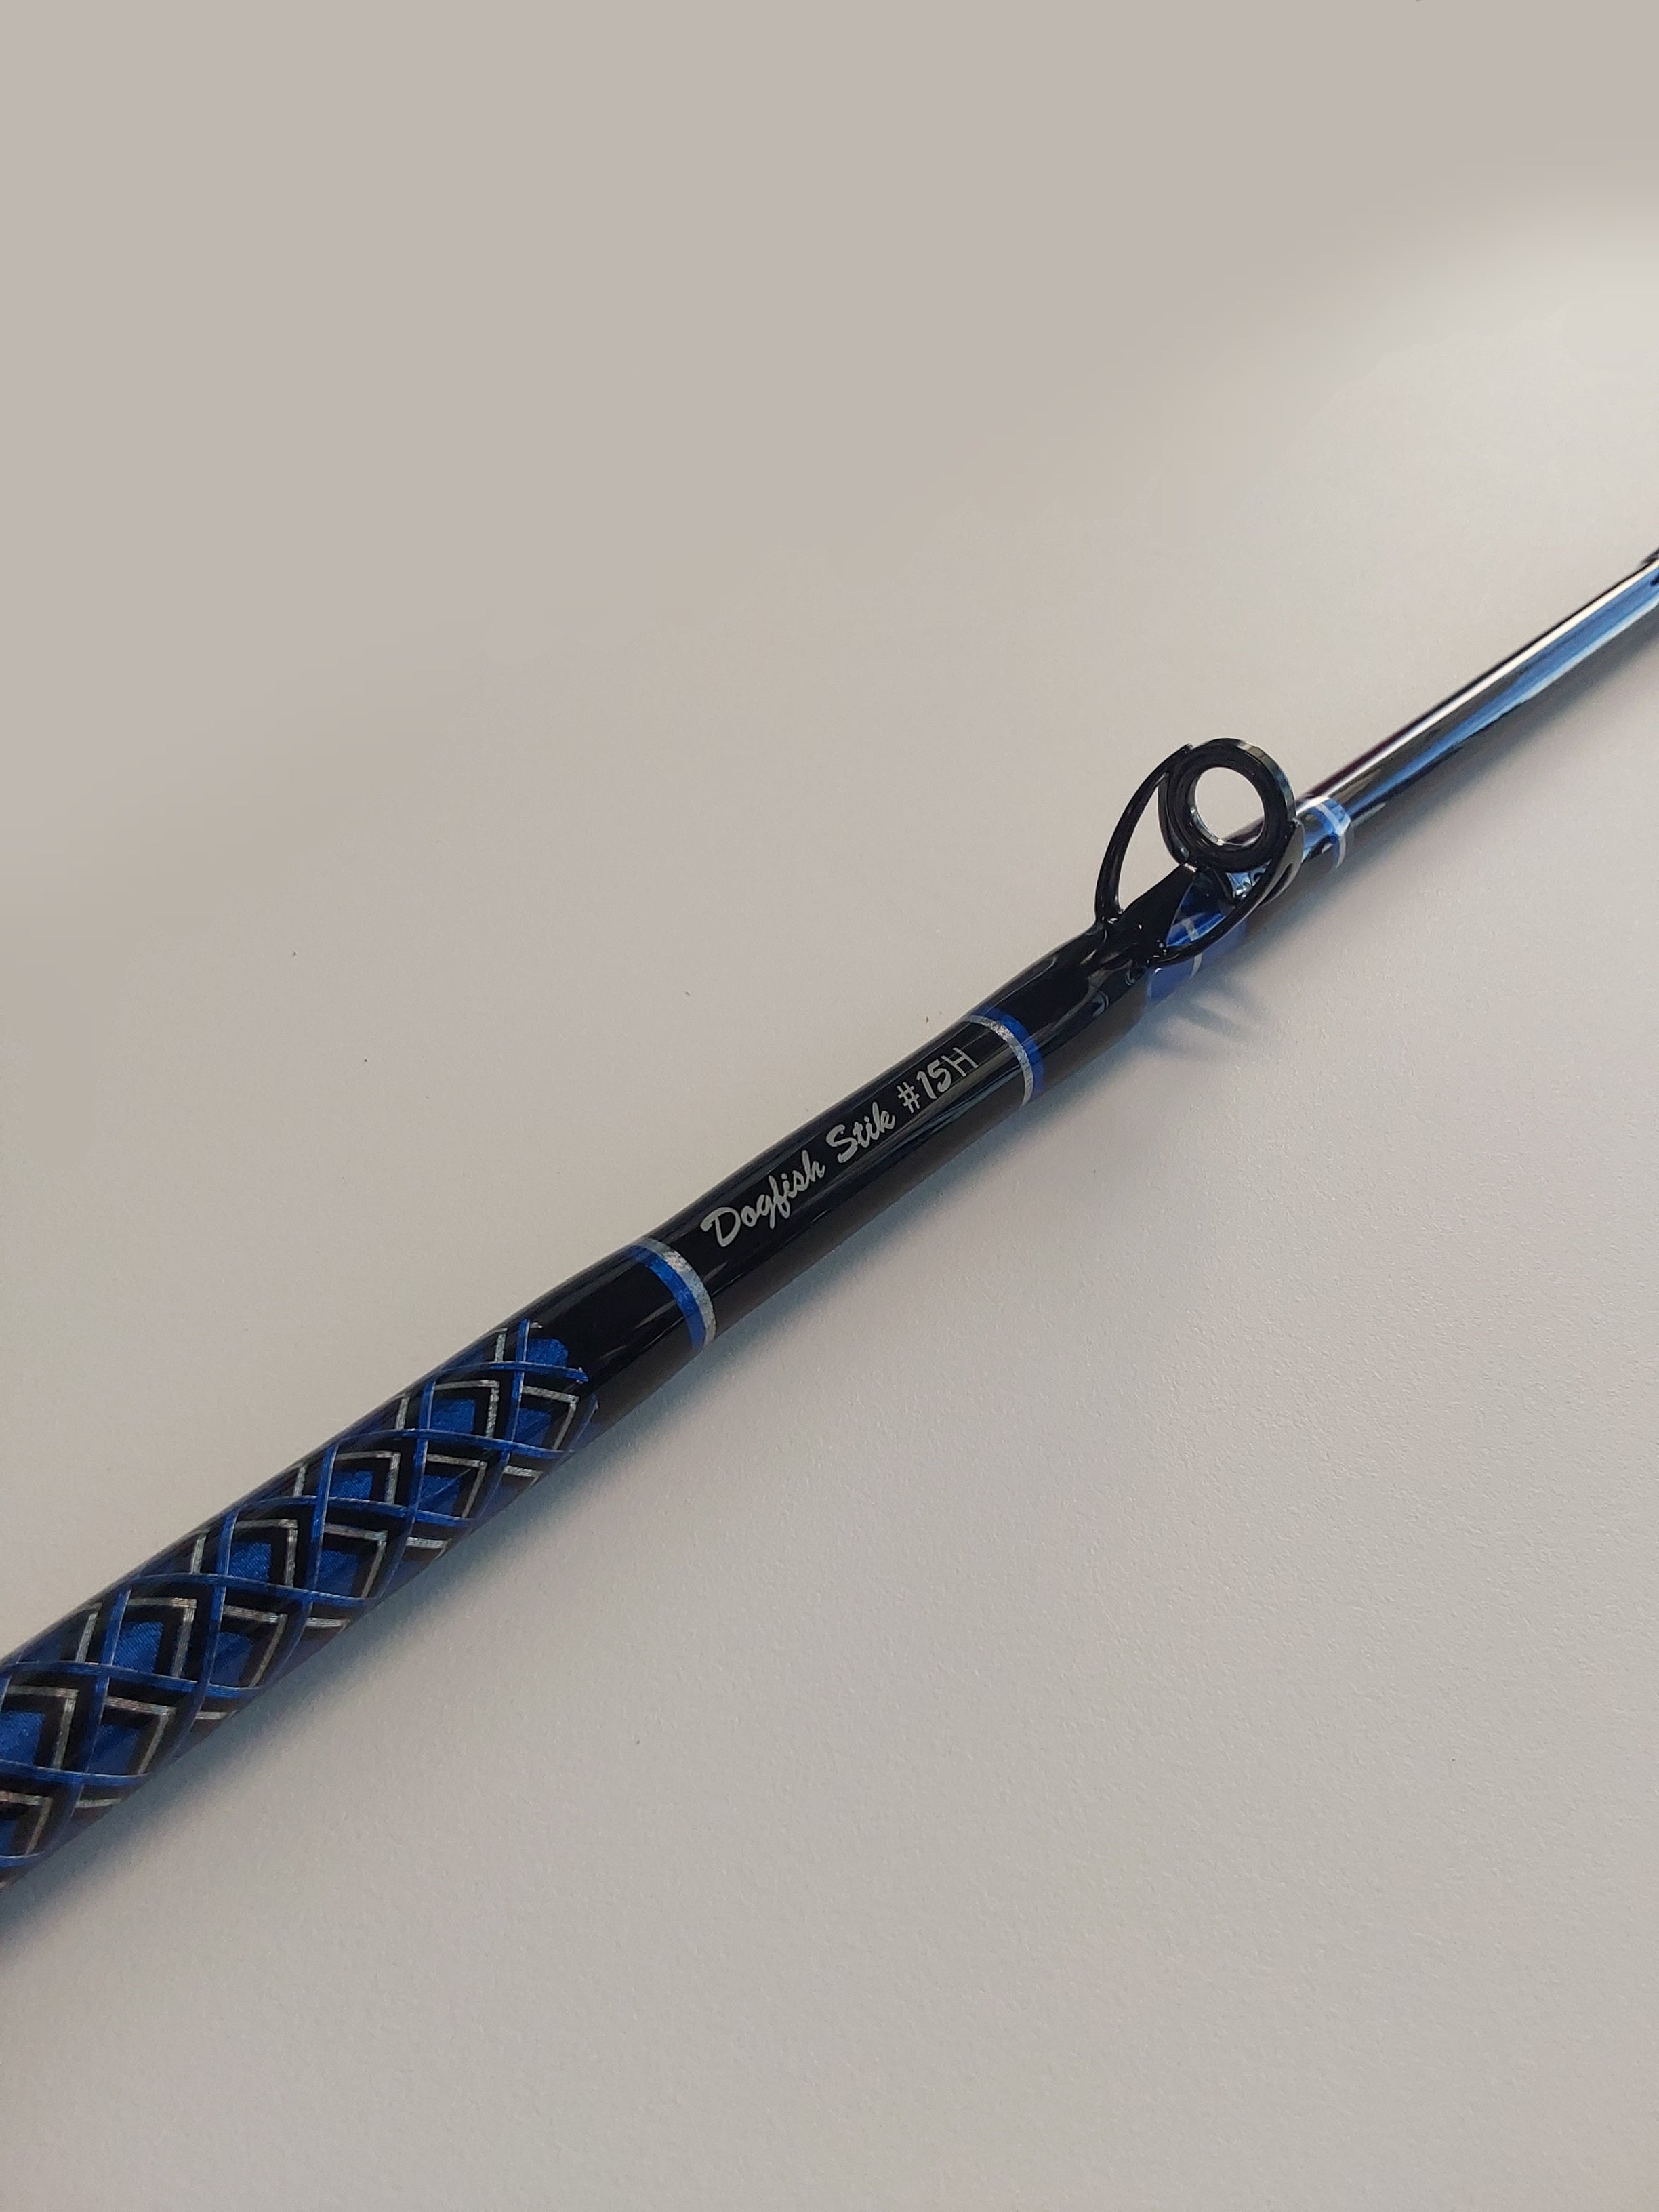 Fuji speed stick rod